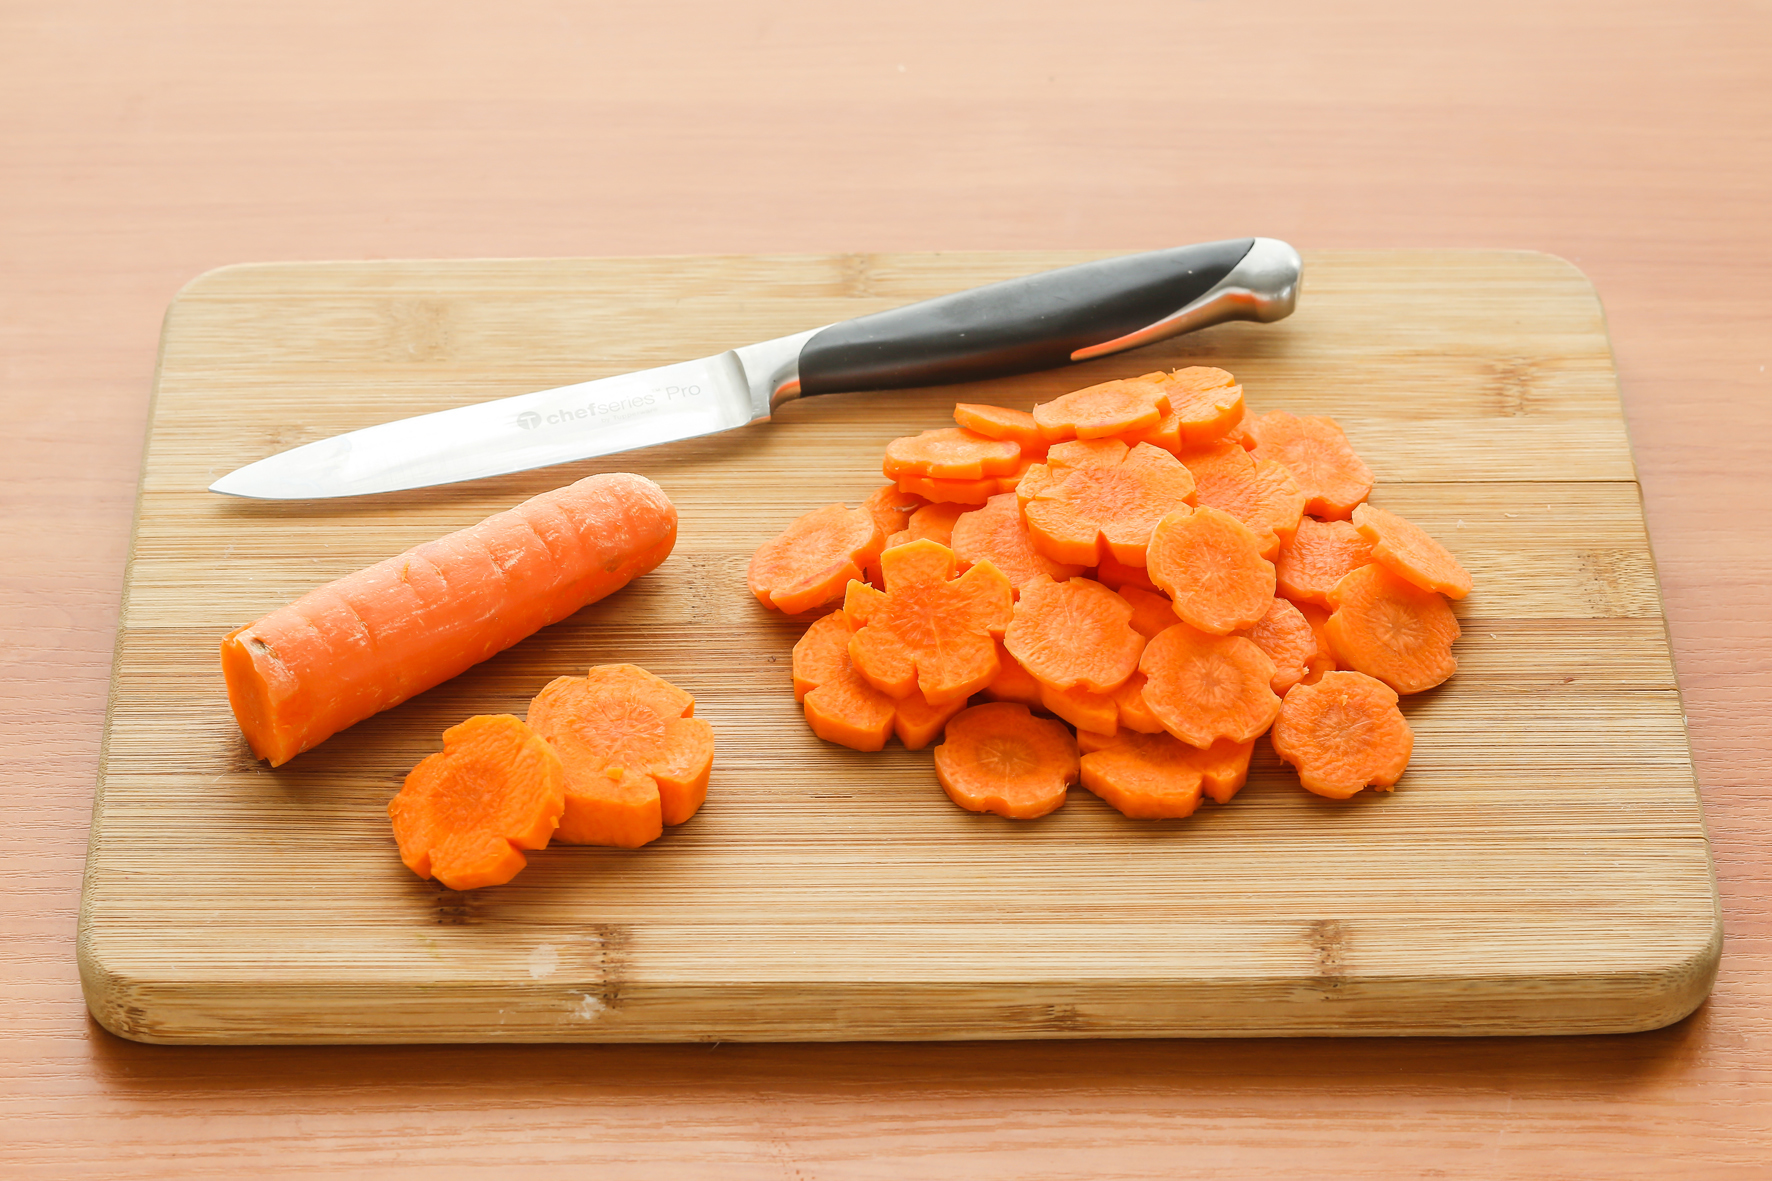 Нож режет овощи. Карбование моркови. Нарезка овощей. Фигурная нарезка моркови. Красиво нарезать морковку.